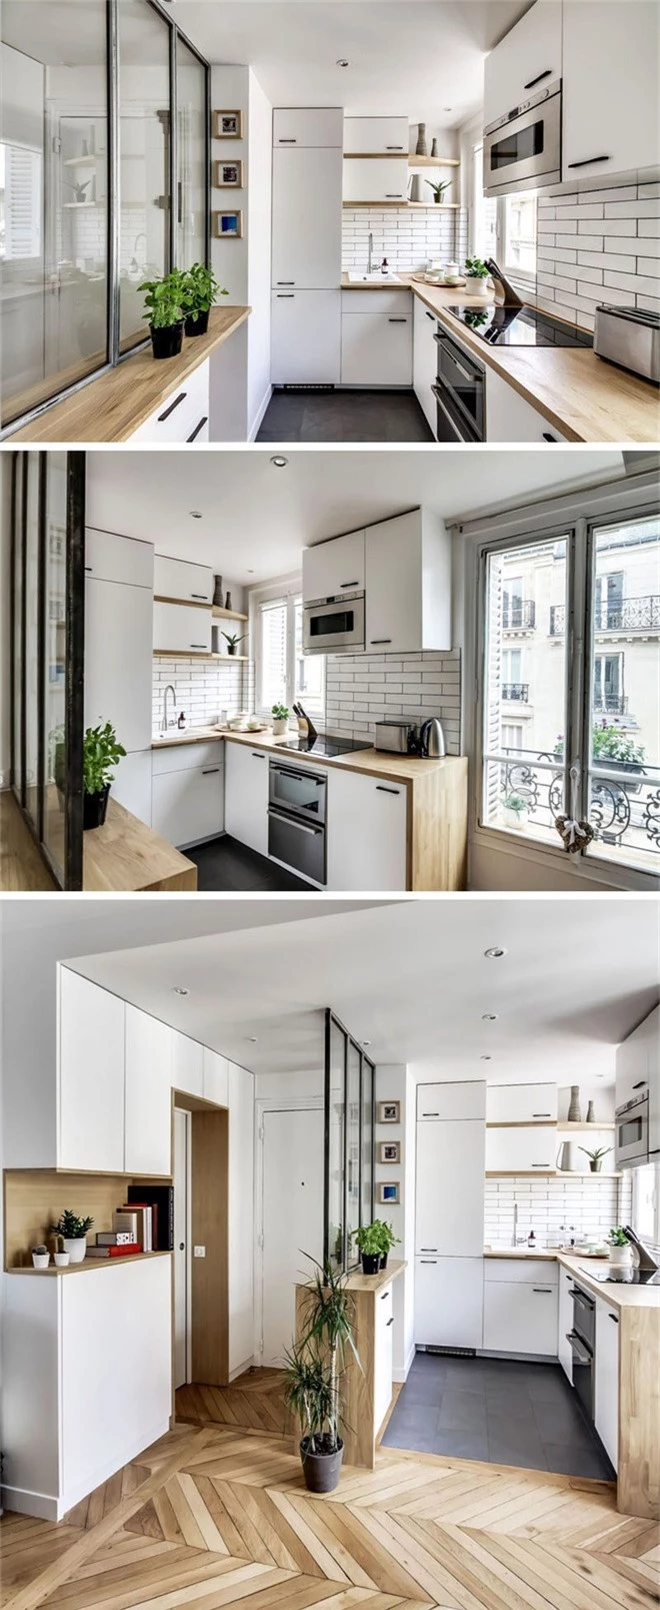 Những căn bếp nhỏ đẹp tới mức bạn sẵn sàng bỏ bếp rộng để được ở trong không gian này - Ảnh 7.